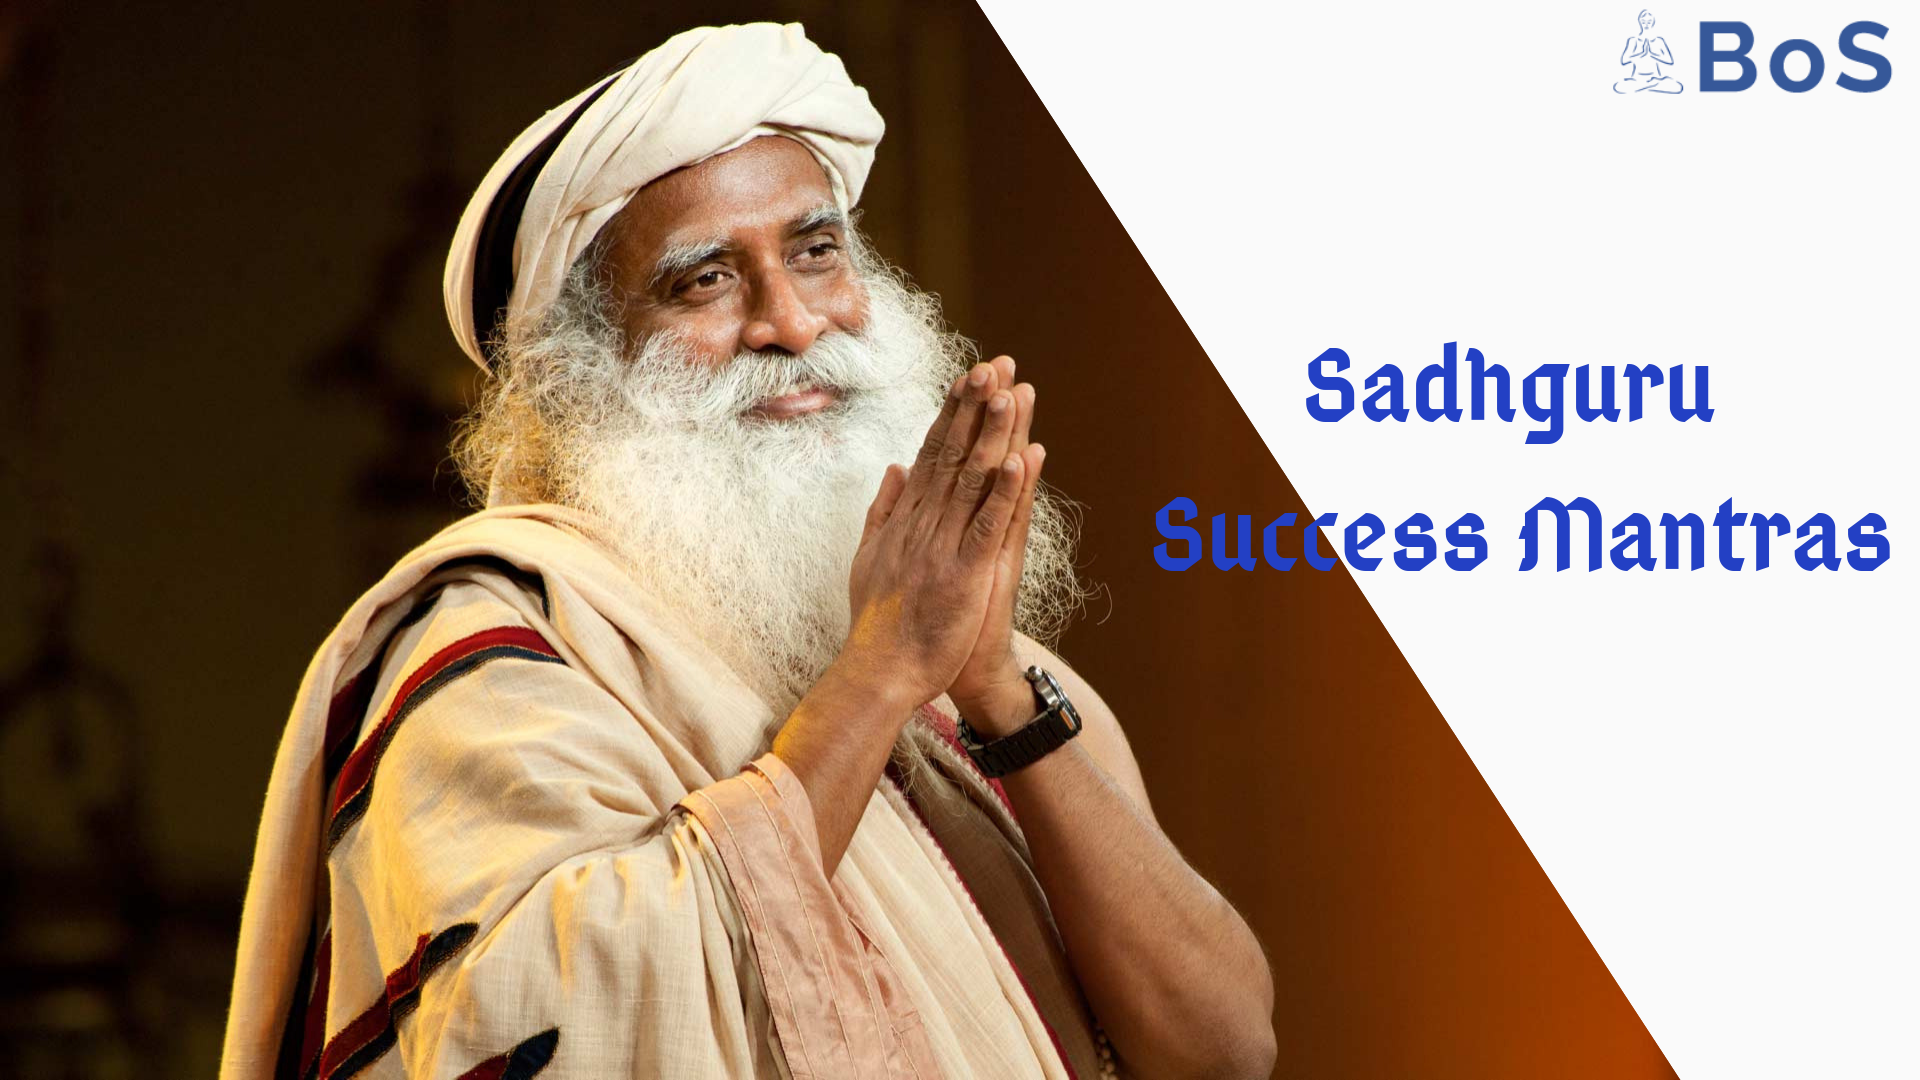 Sadhguru Success Mantra - Sadguru Quotes In English - HD Wallpaper 